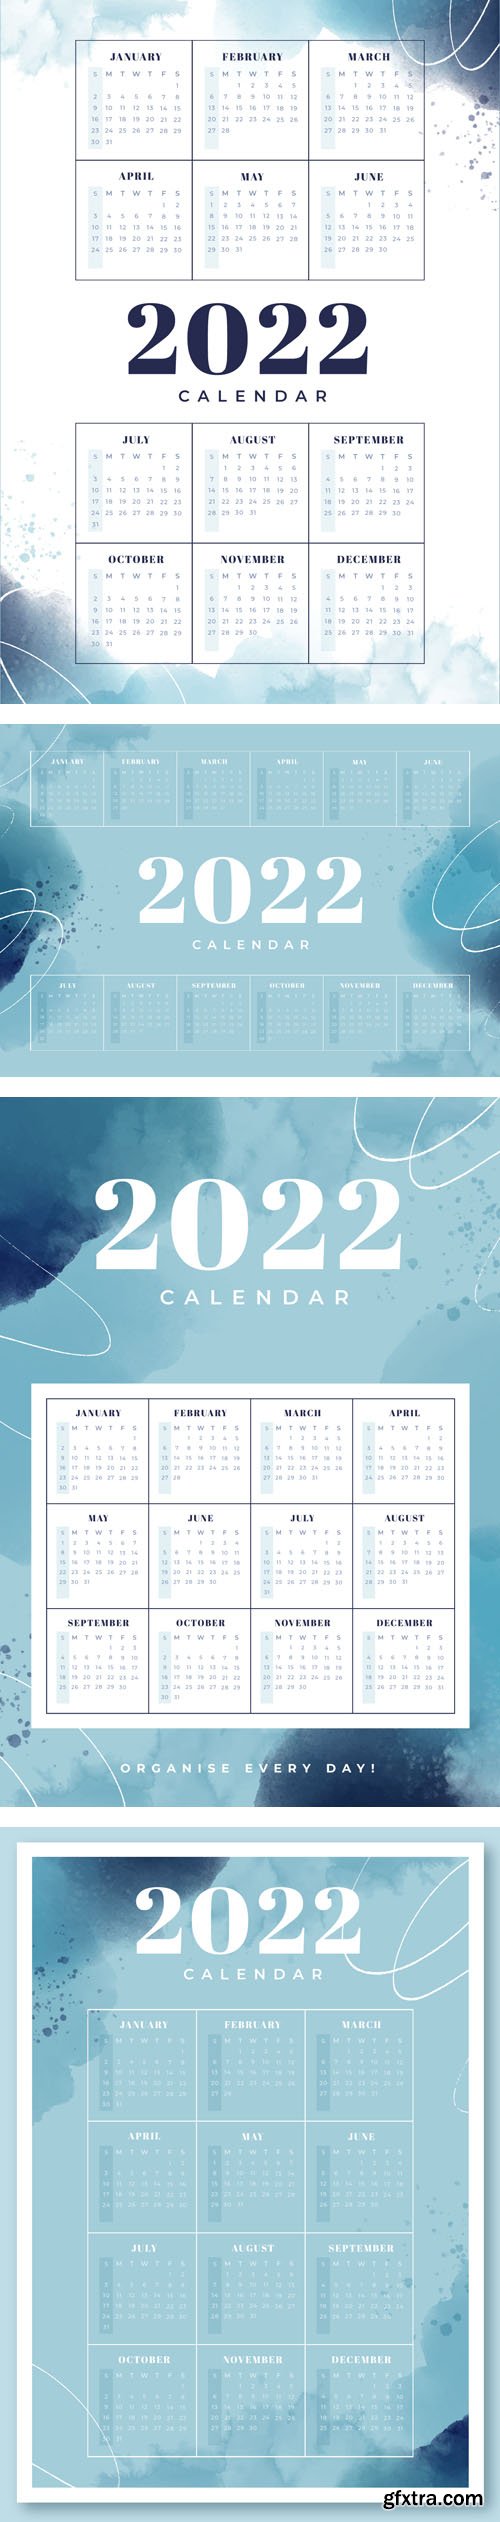 4 Watercolor Blue 2022 Calendars Vector Templates Collection